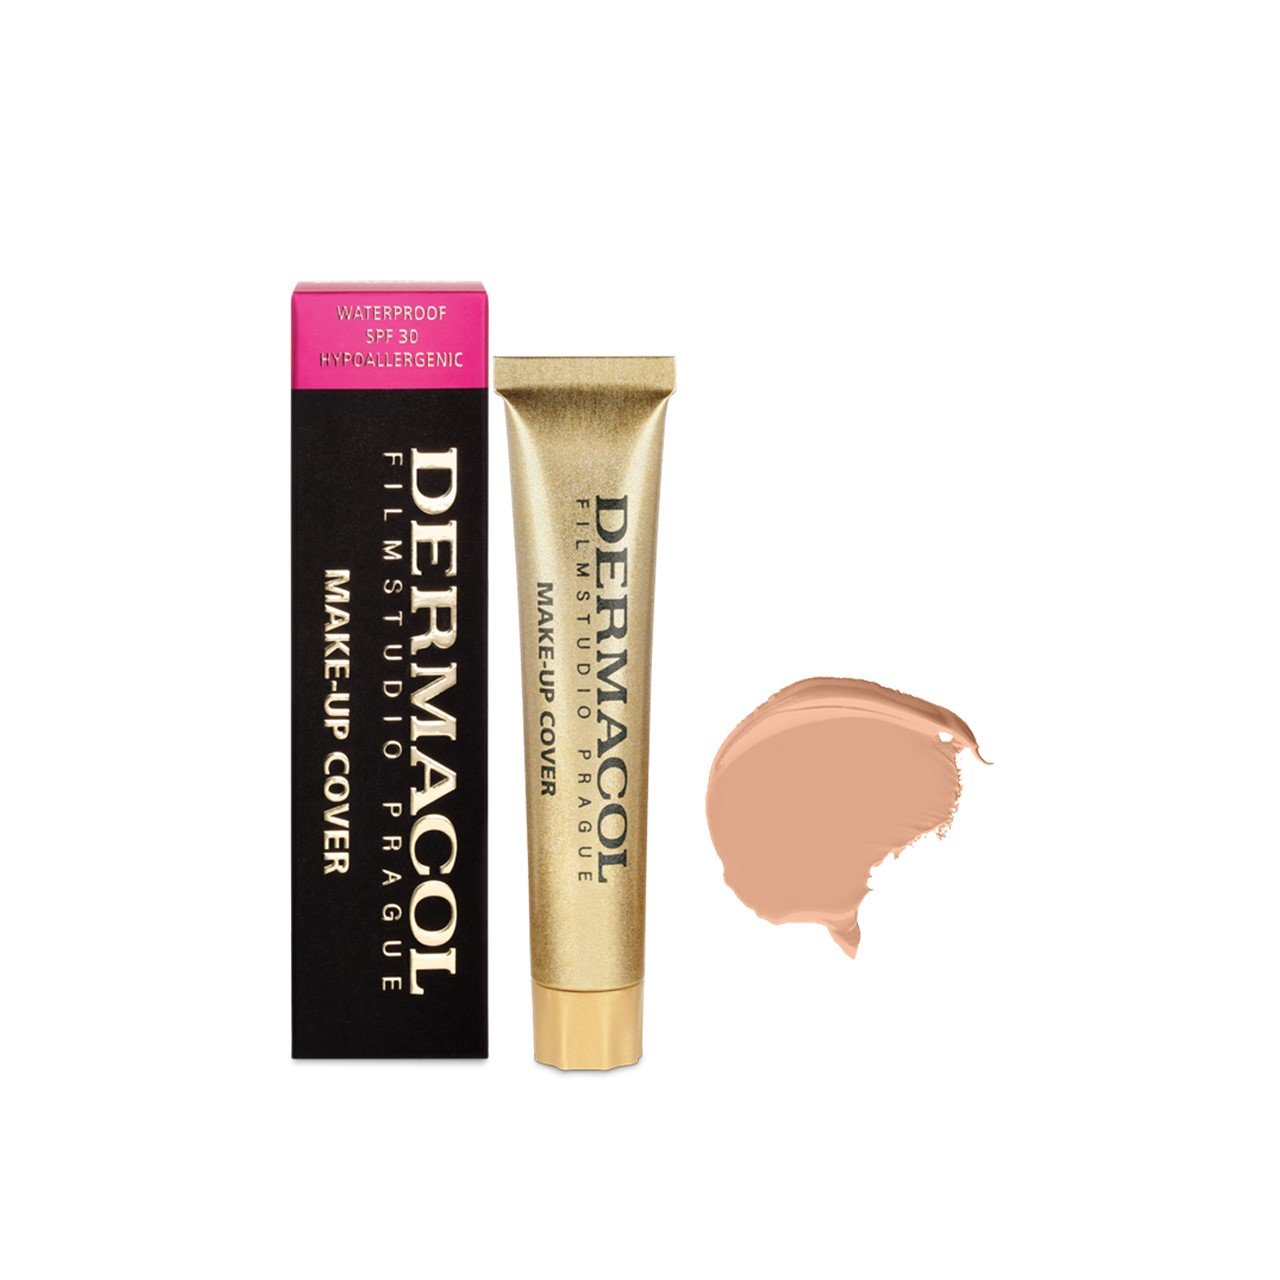 Dermacol Make-Up Cover Foundation SPF30 209 30g (1.06oz)